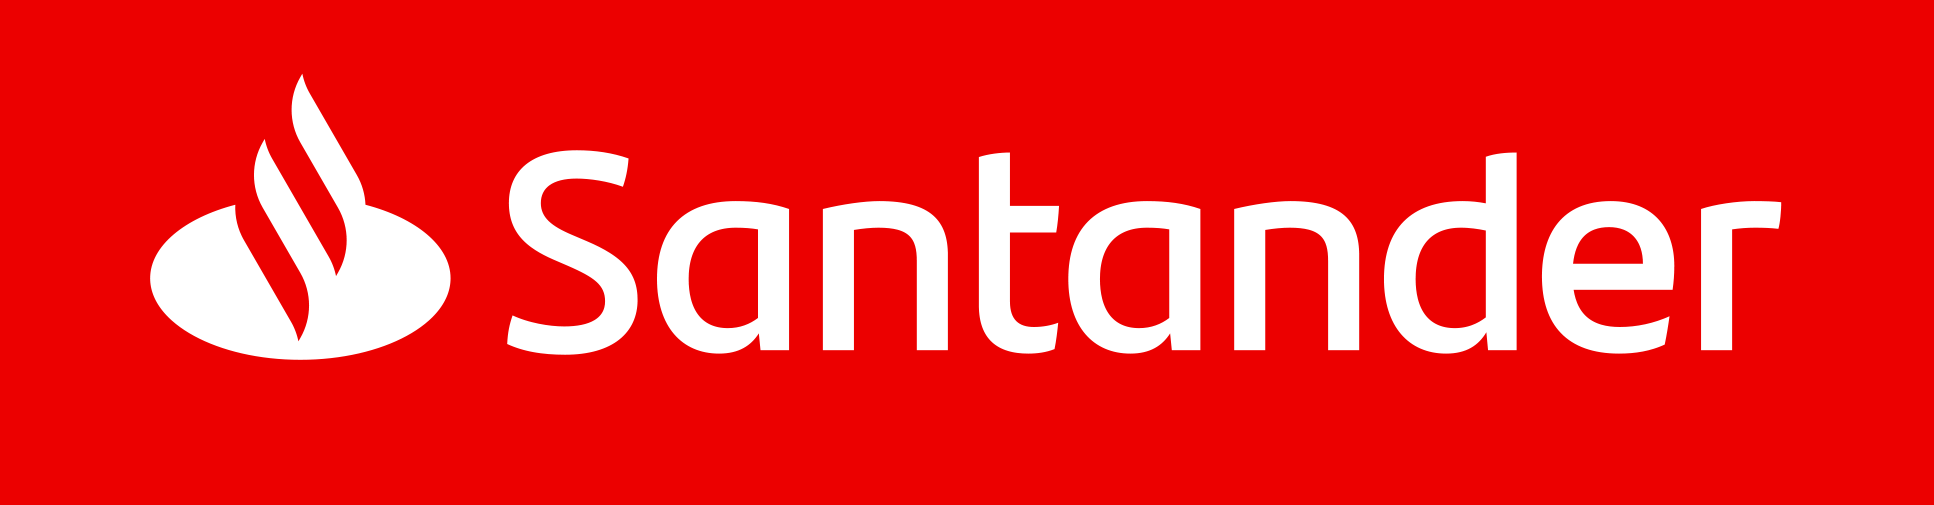 Santander - wyniki za I półrocze 2021